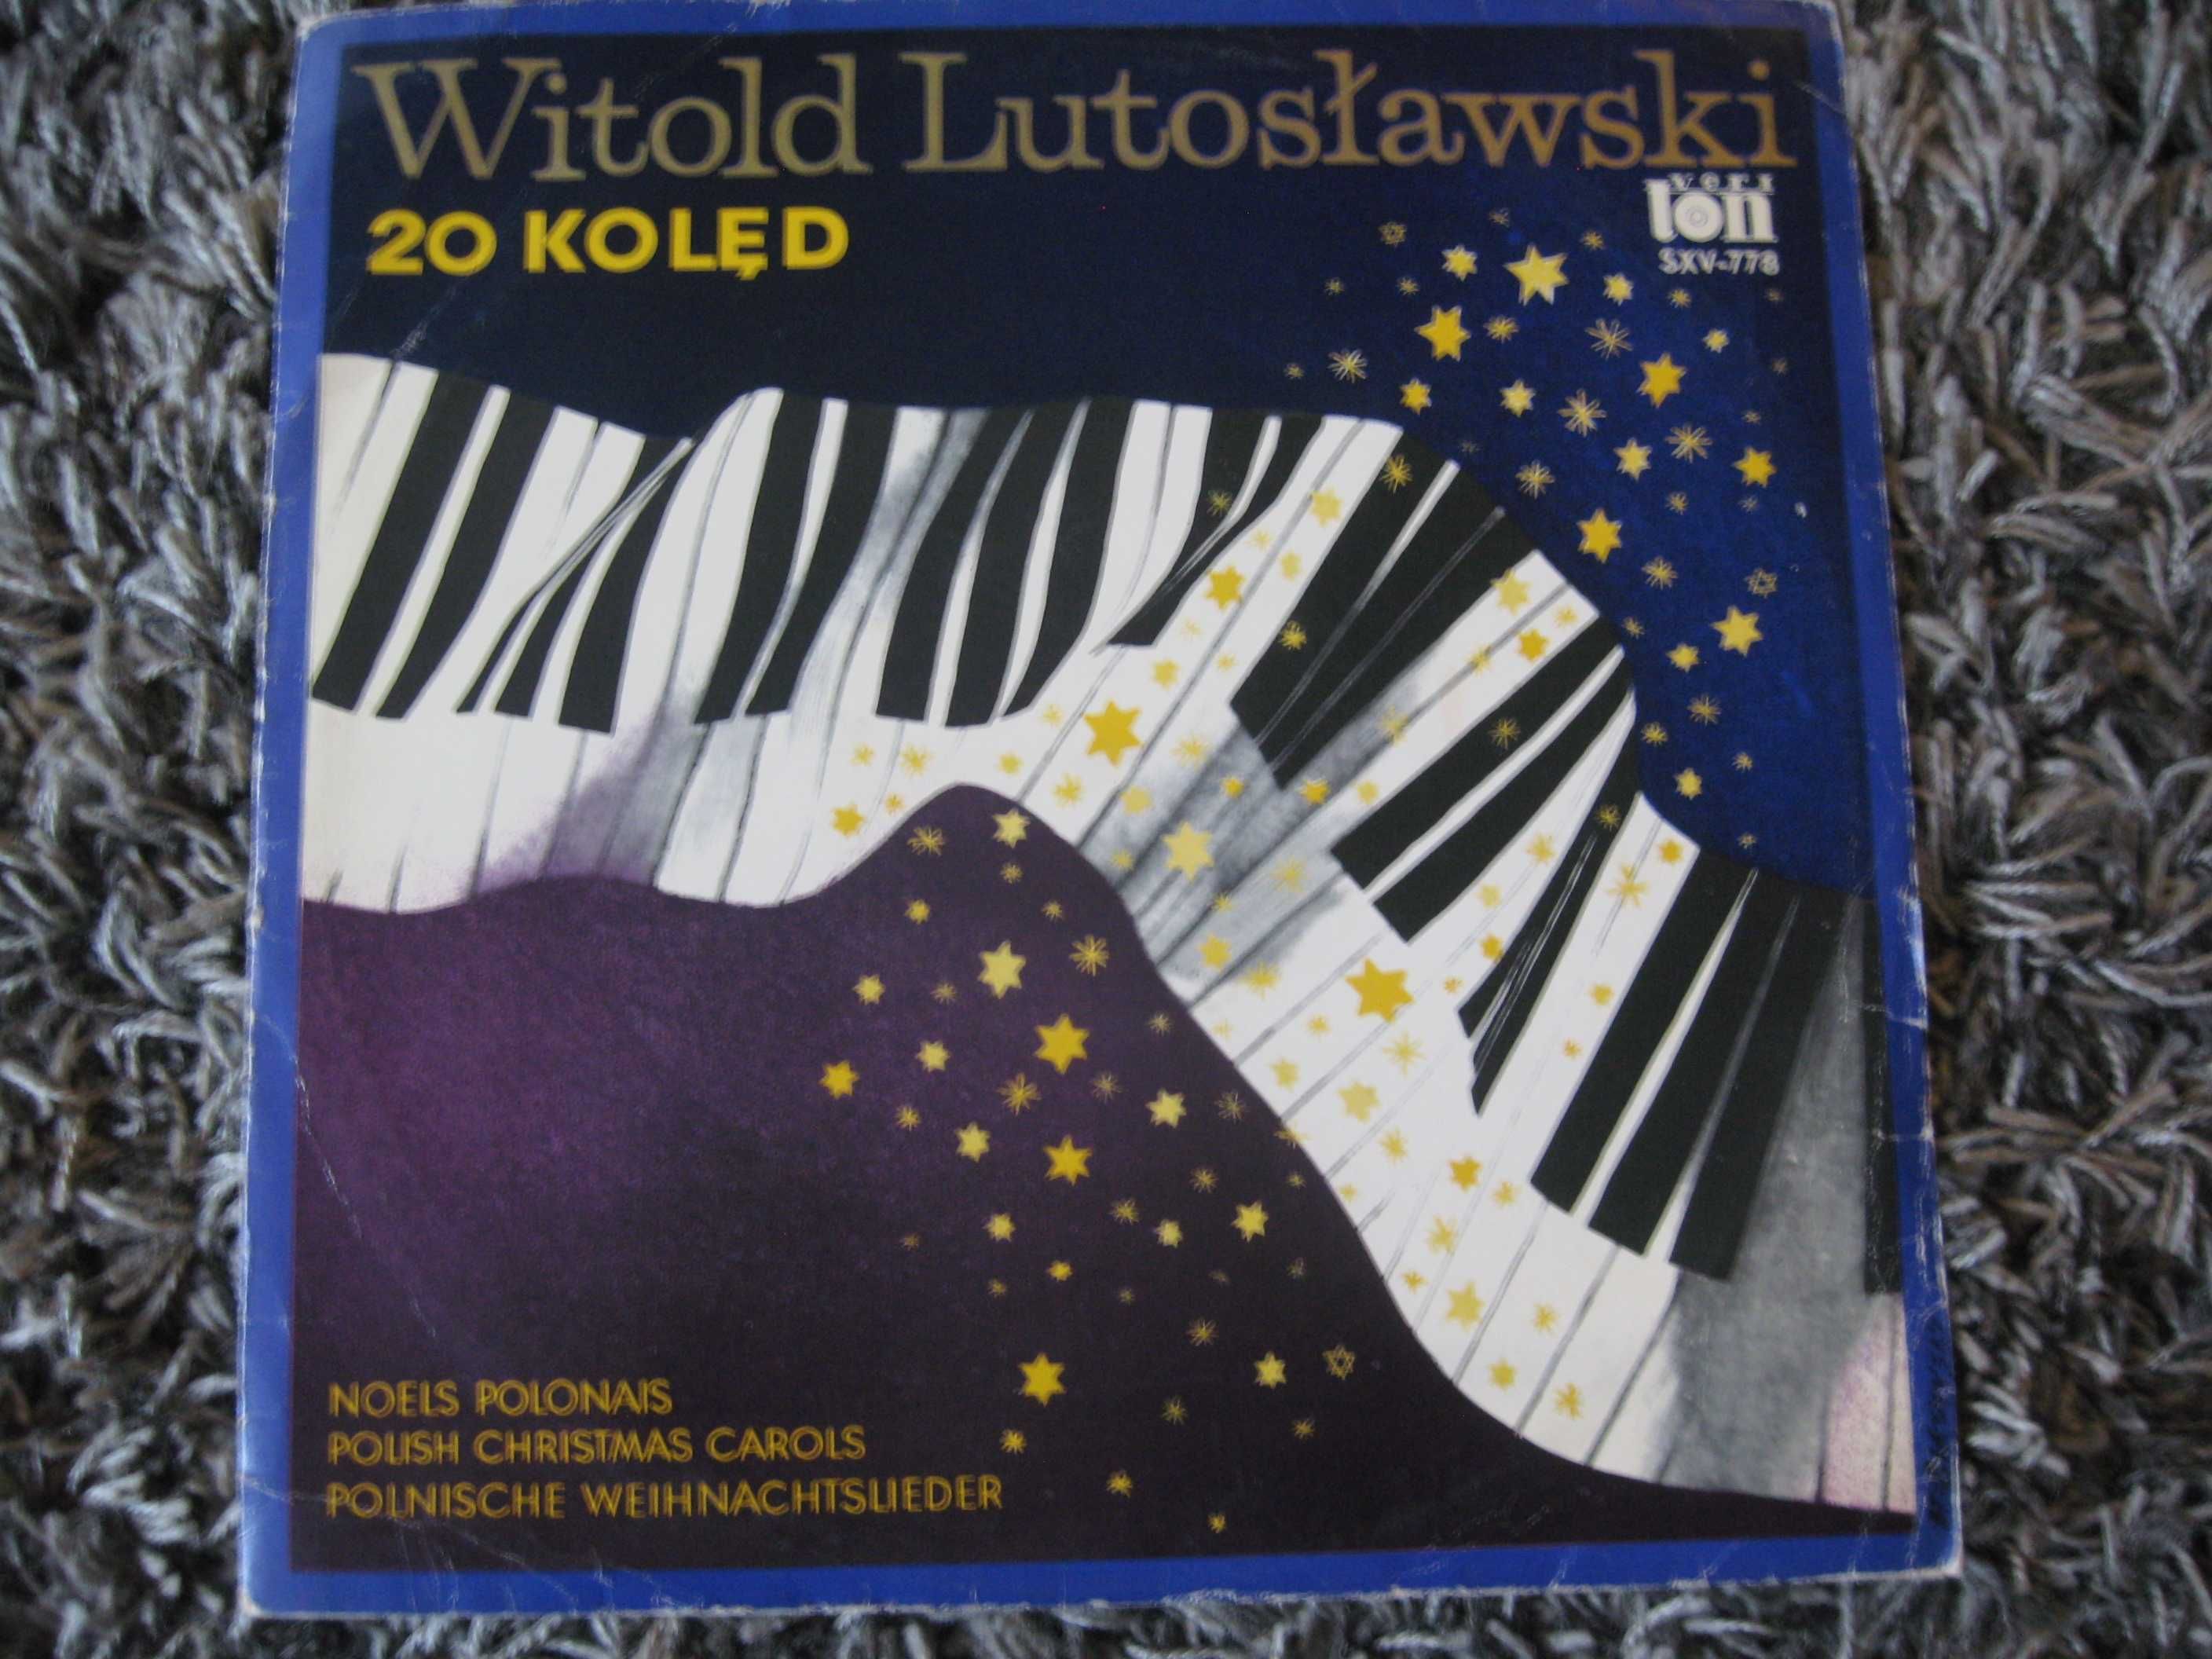 Witold Lutosławski - "20 kolęd"